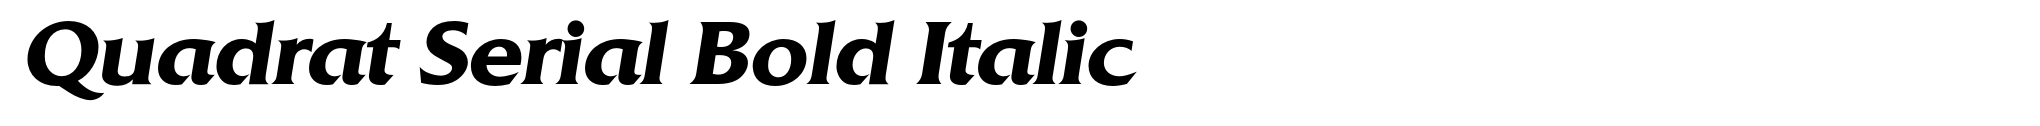 Quadrat Serial Bold Italic image